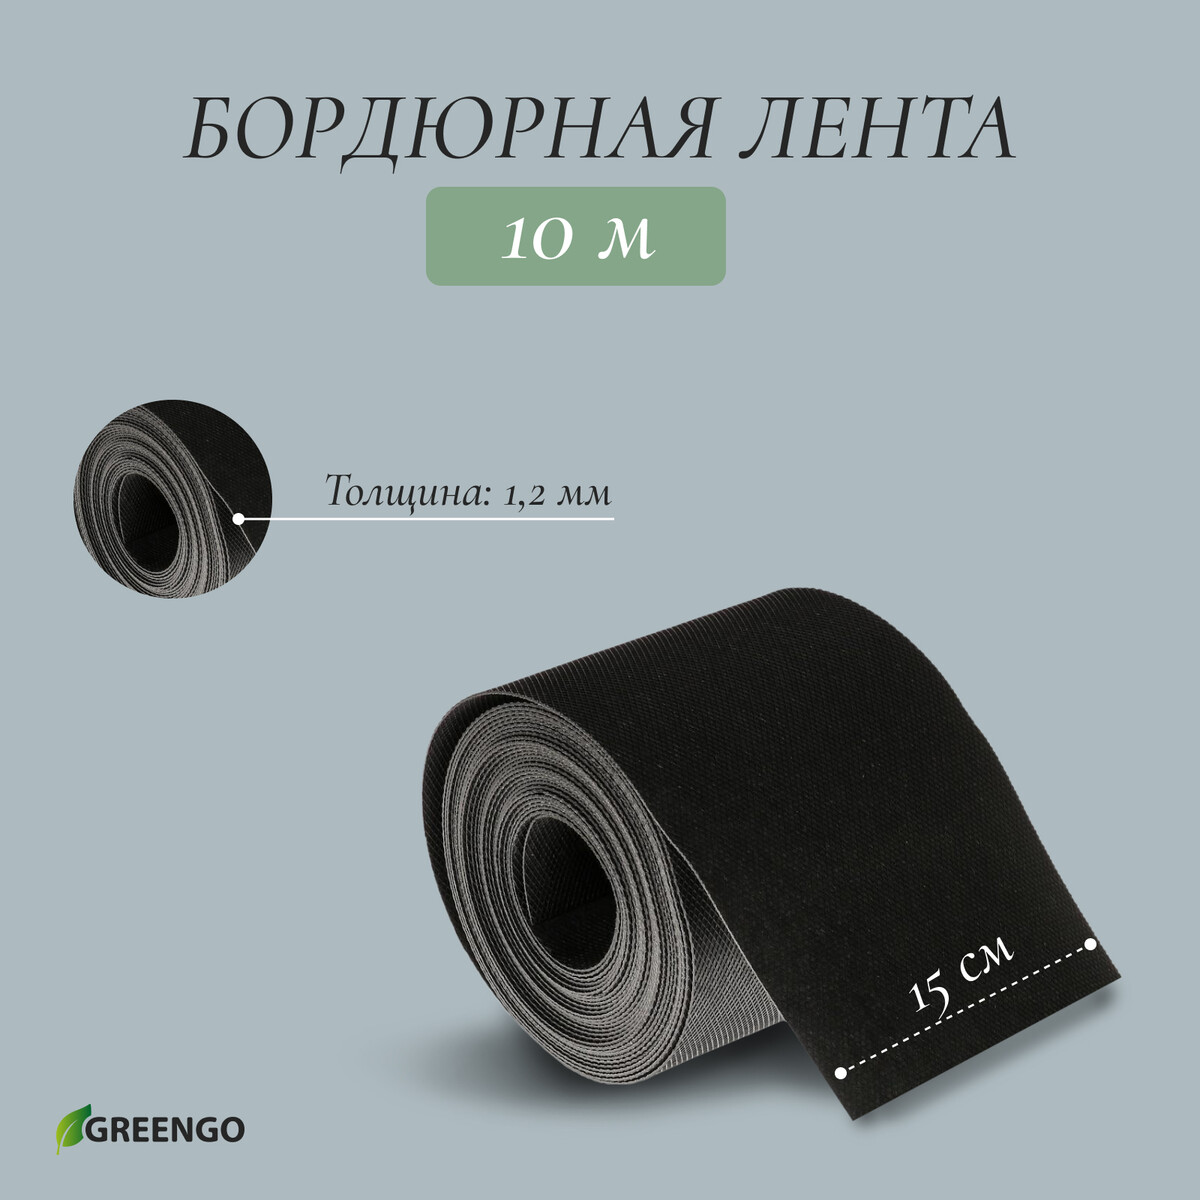 Лента бордюрная, 0.15 × 10 м, толщина 1.2 мм, пластиковая, черная, greengo лента бордюрная 0 1 × 9 м толщина 0 6 мм пластиковая гофра черная